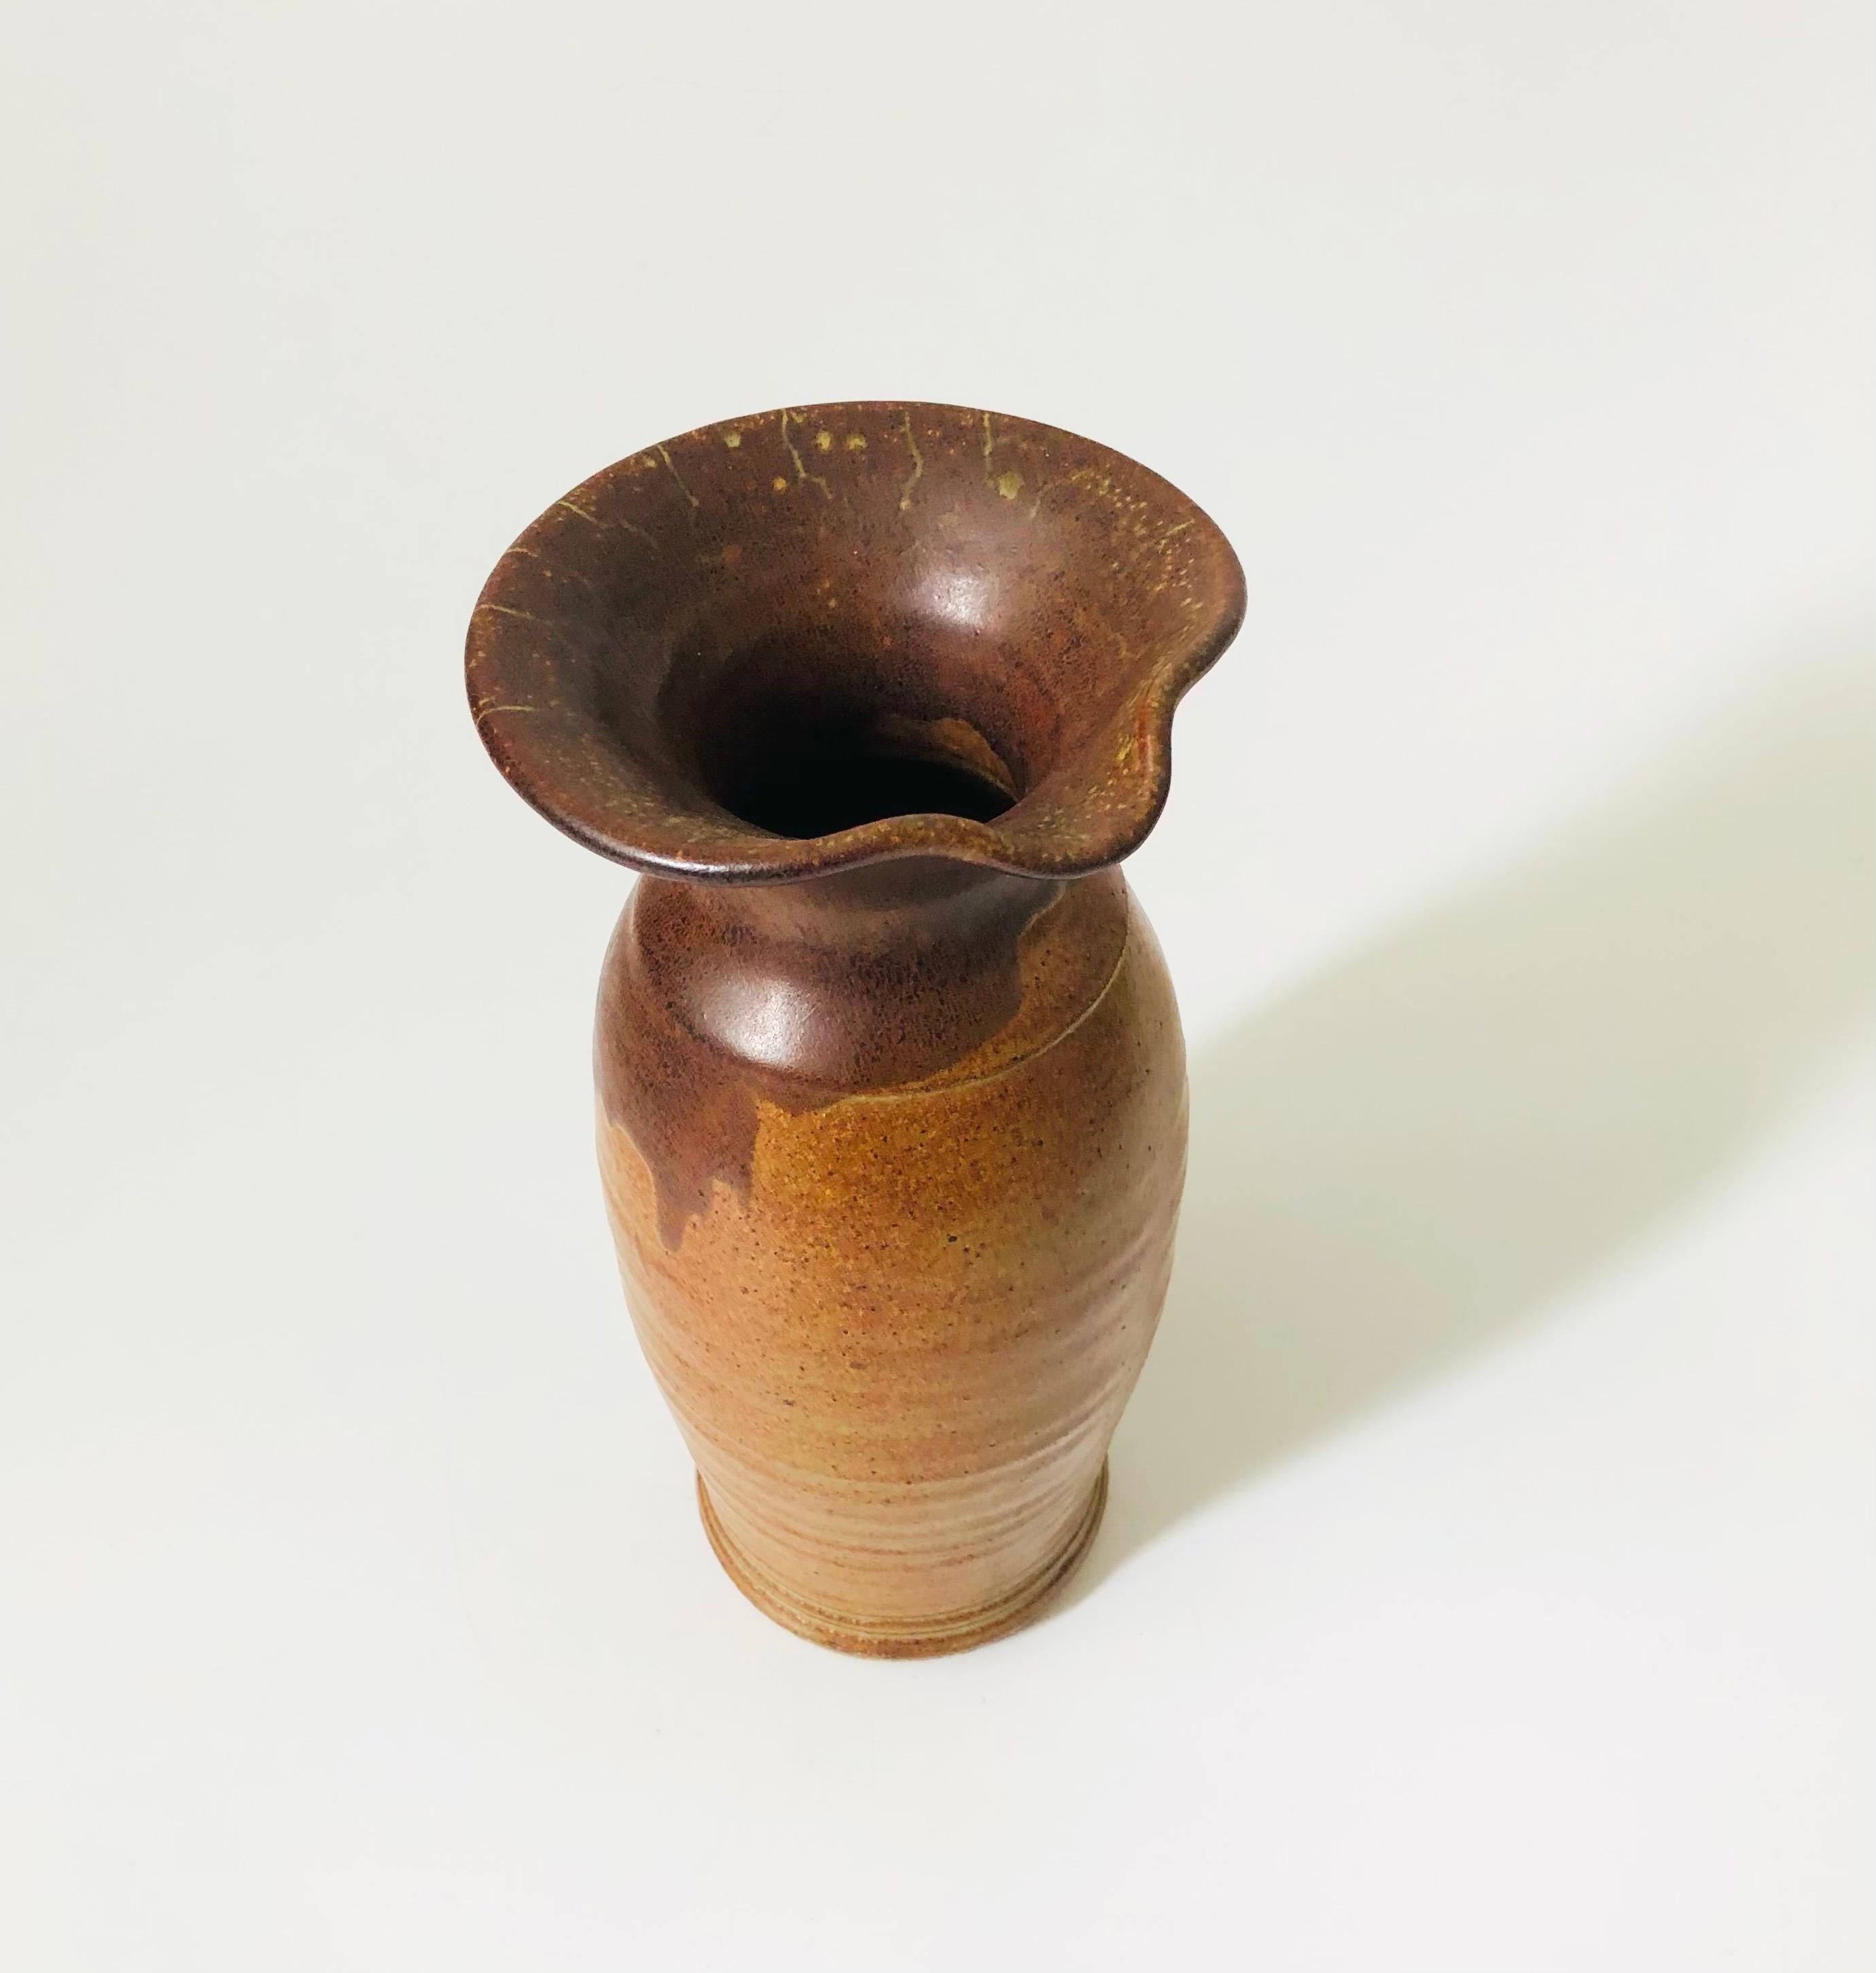 Eine hohe Vase aus Studio-Keramik im Vintage-Stil. Zweifarbige erdig-braune Glasuren. An einer Seite der Öffnung ist ein Ausguss angebracht.

